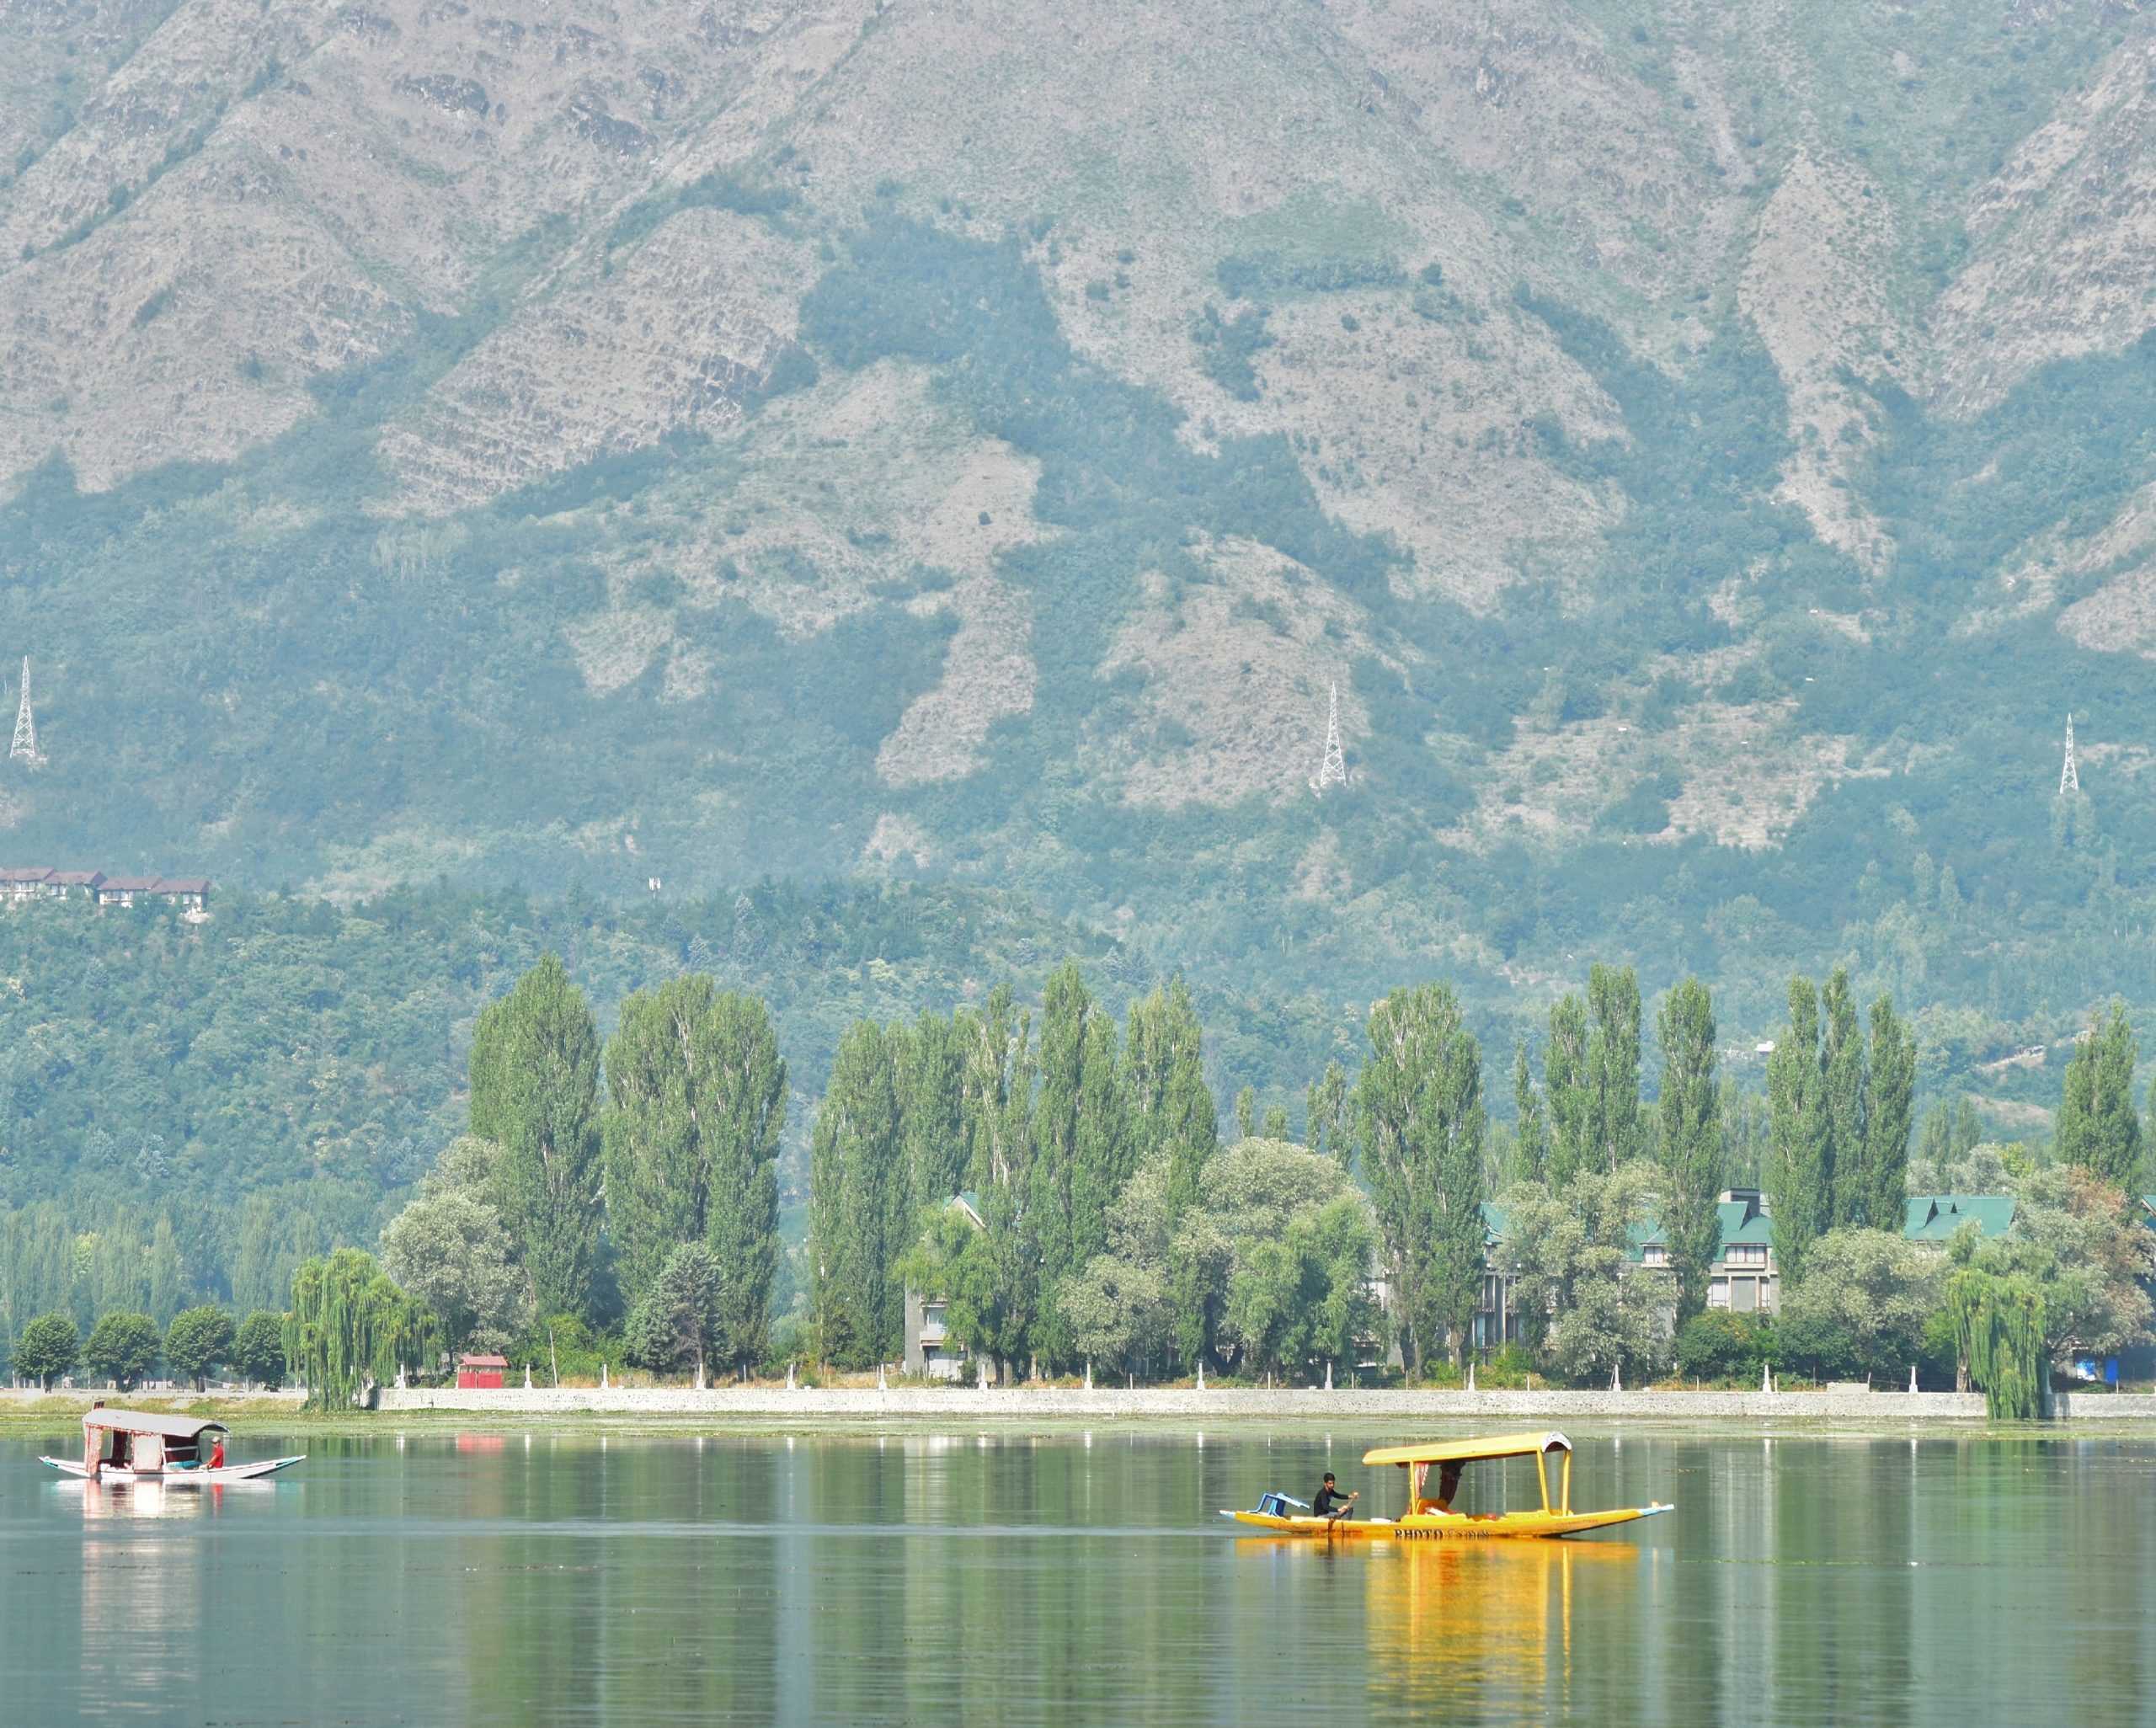 Dal lake Srinagar Kashmir